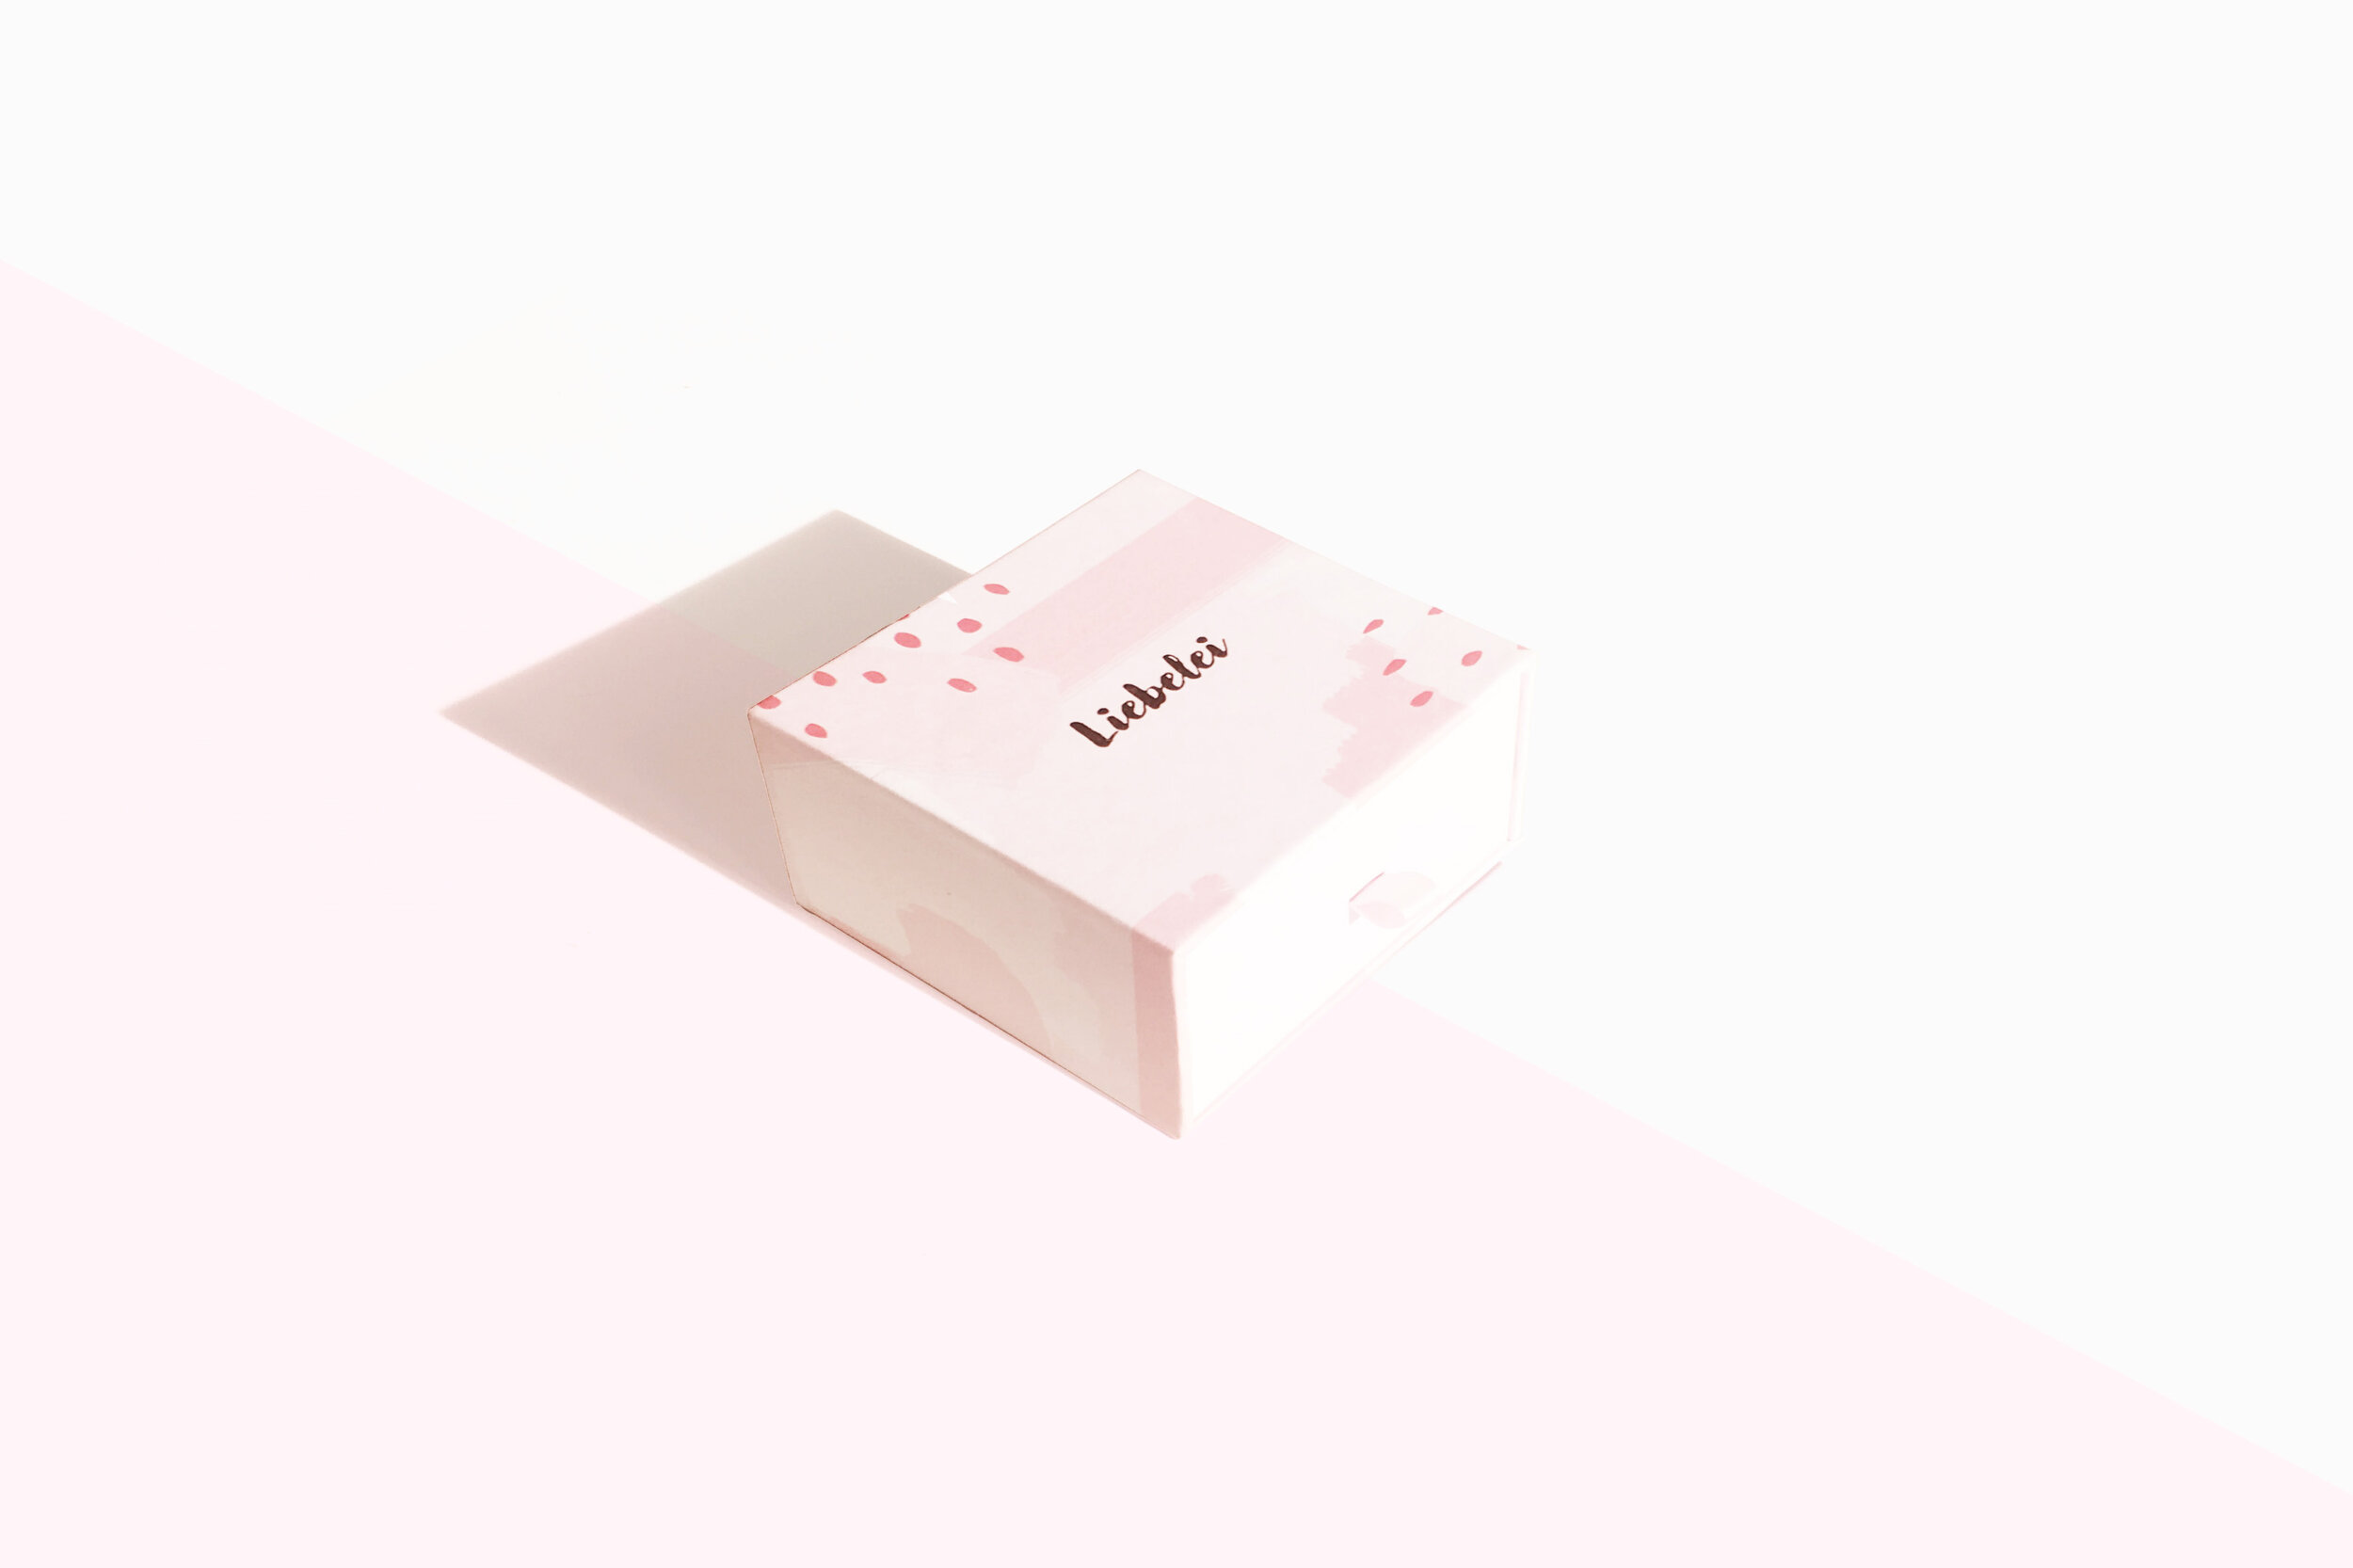 liebelei-yoni-ei-set-packaging-2.jpg